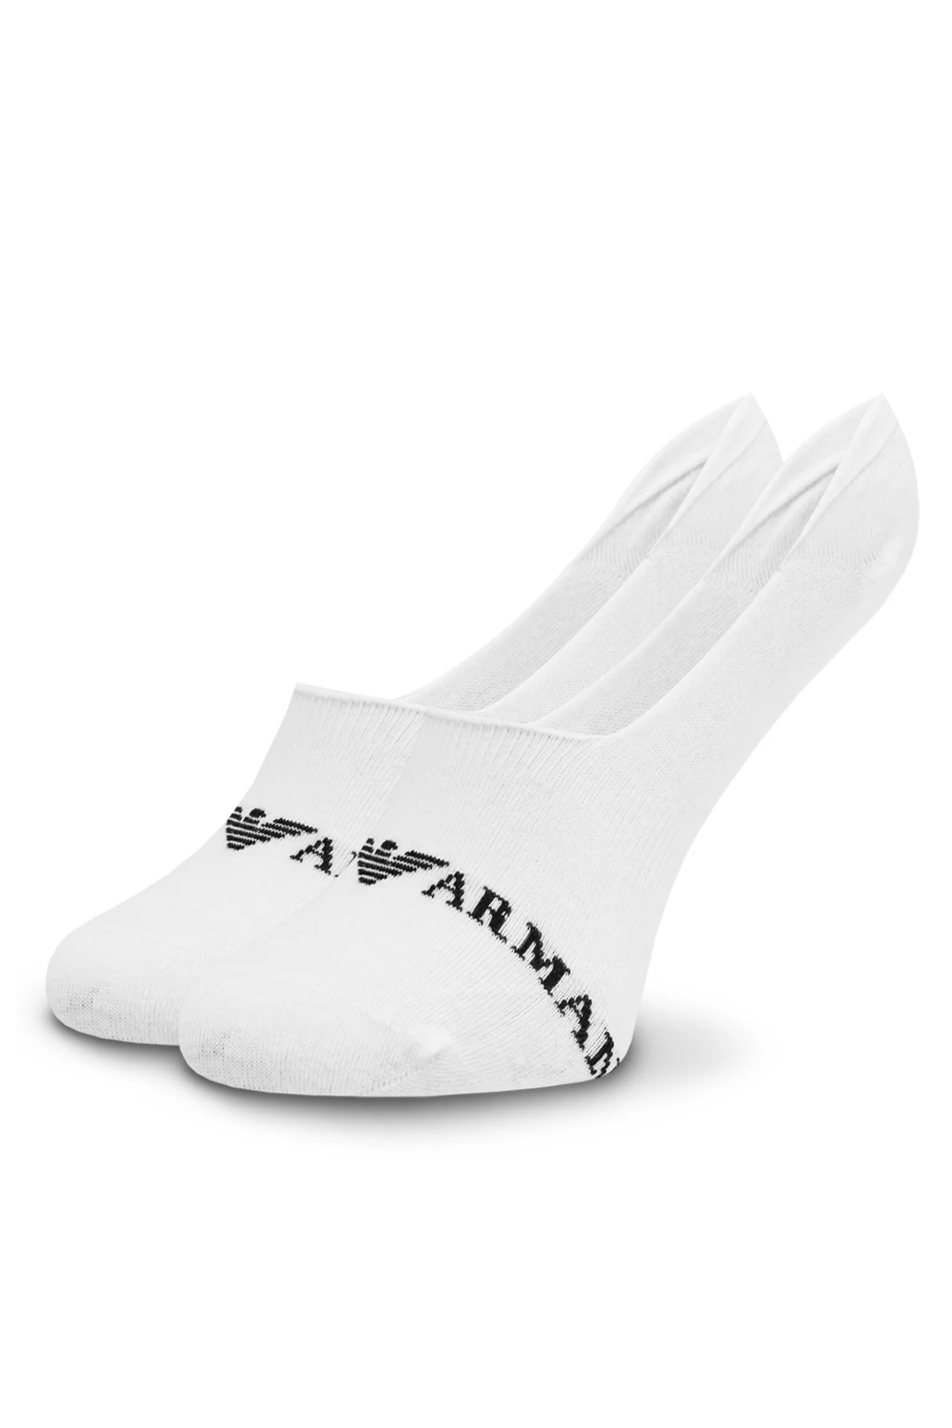 Emporio Armani Men's Footie Sock